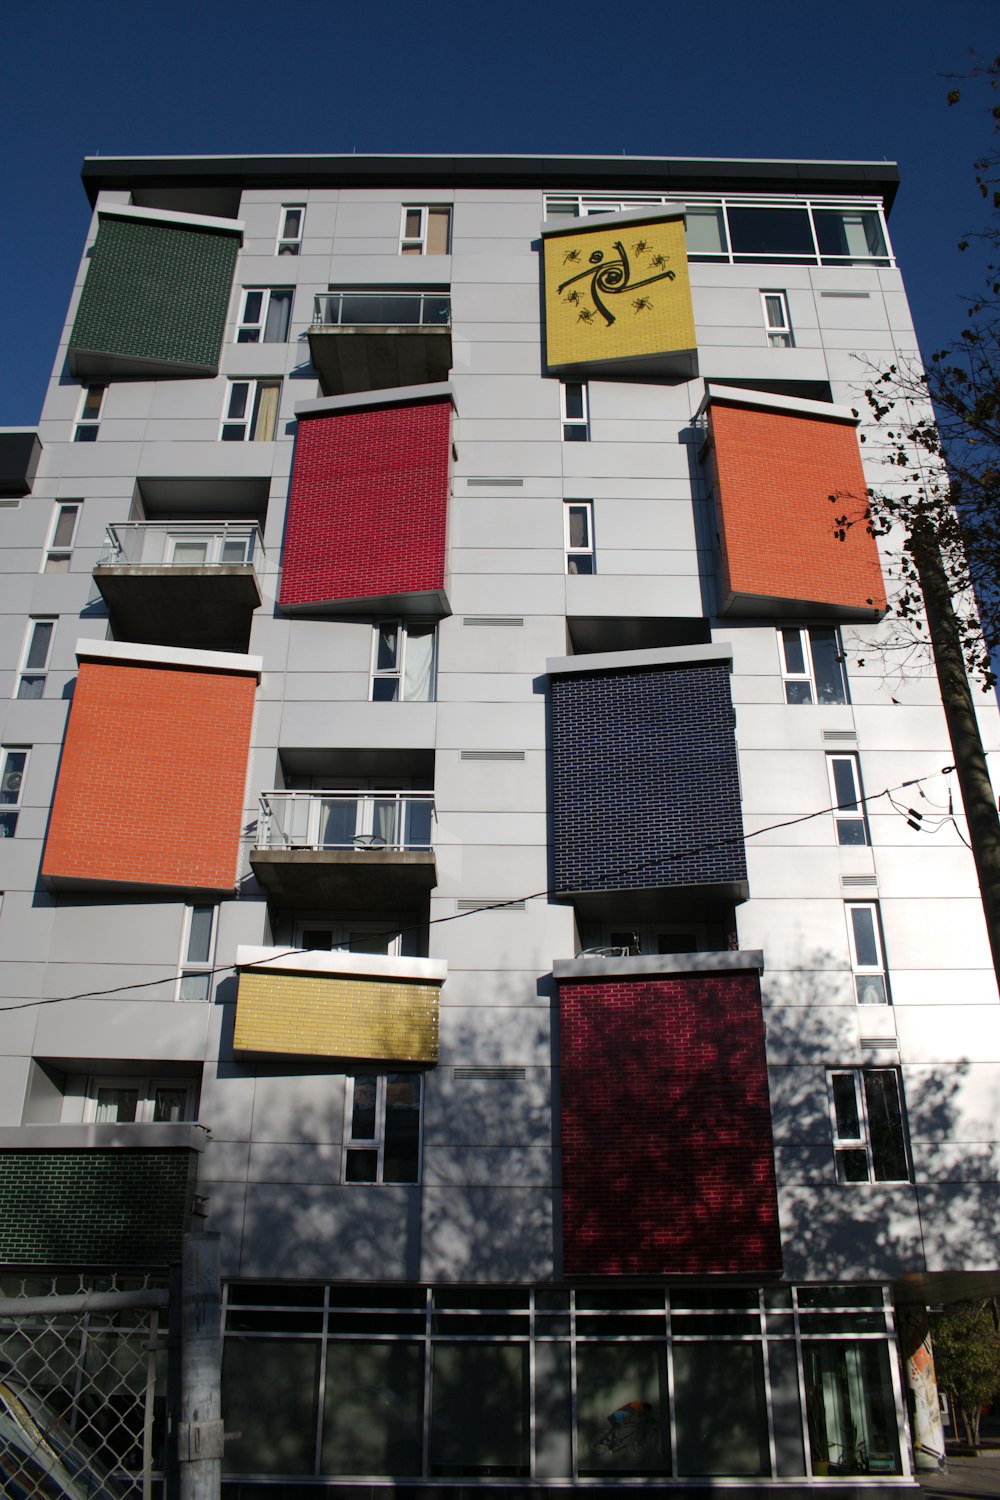 창문이 많은 여러 가지 색상의 건물